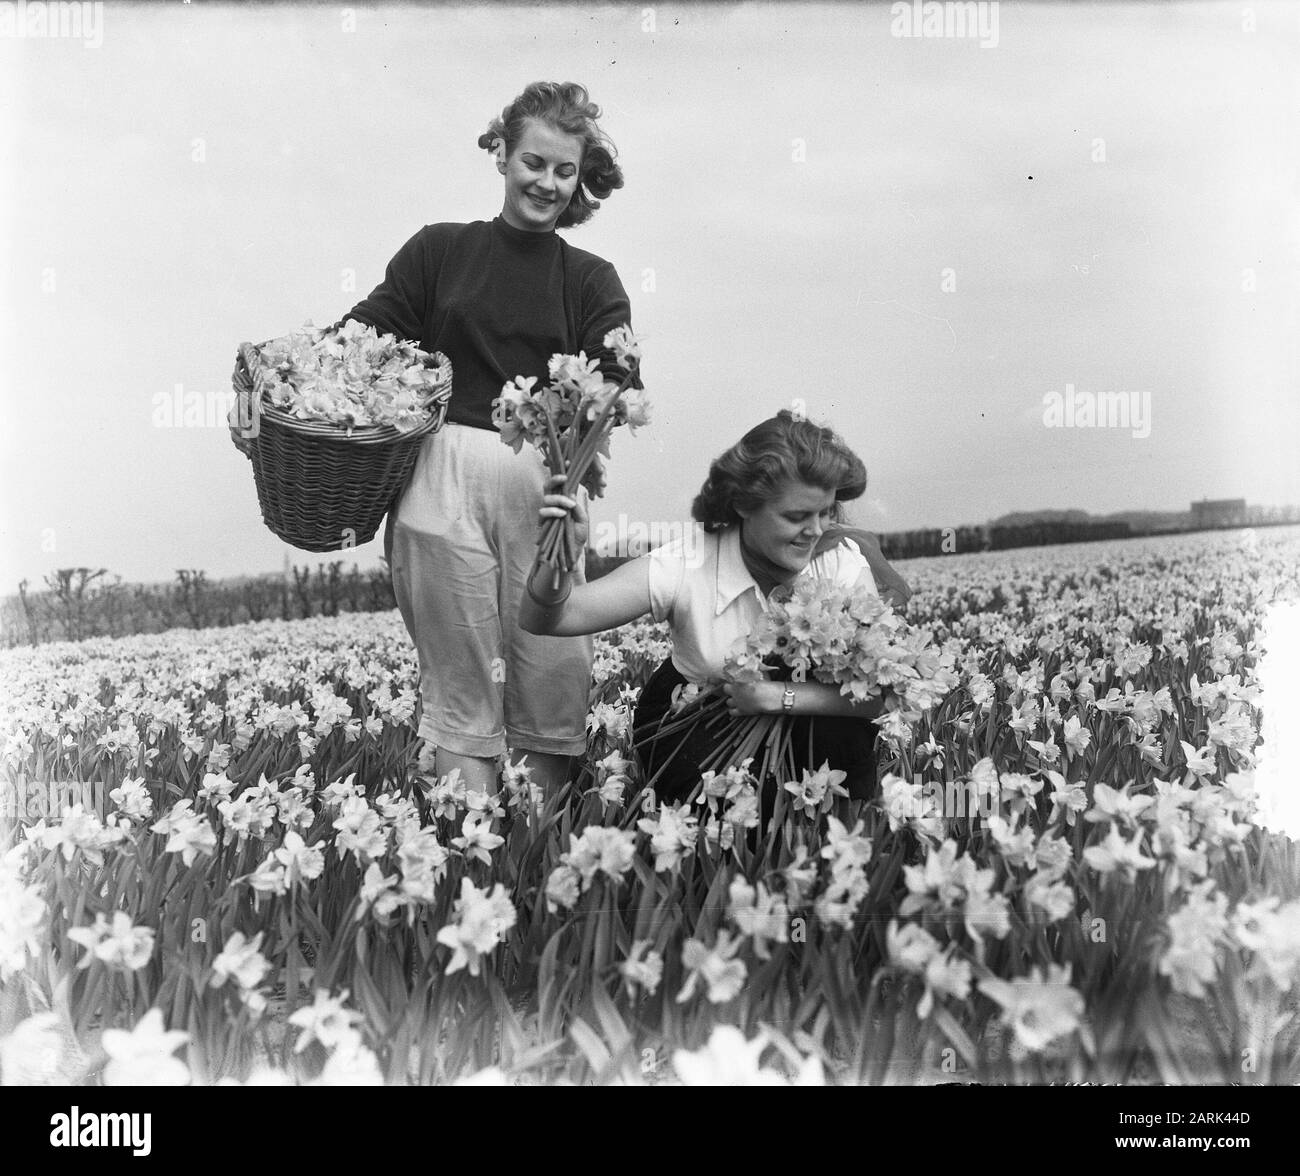 Frühlingsbilder Mädchen auf Daffodil Field Datum: 2. April 1953 Schlagwörter: Mädchen, Frühlingsbilder Personenname: Narzissen Stockfoto